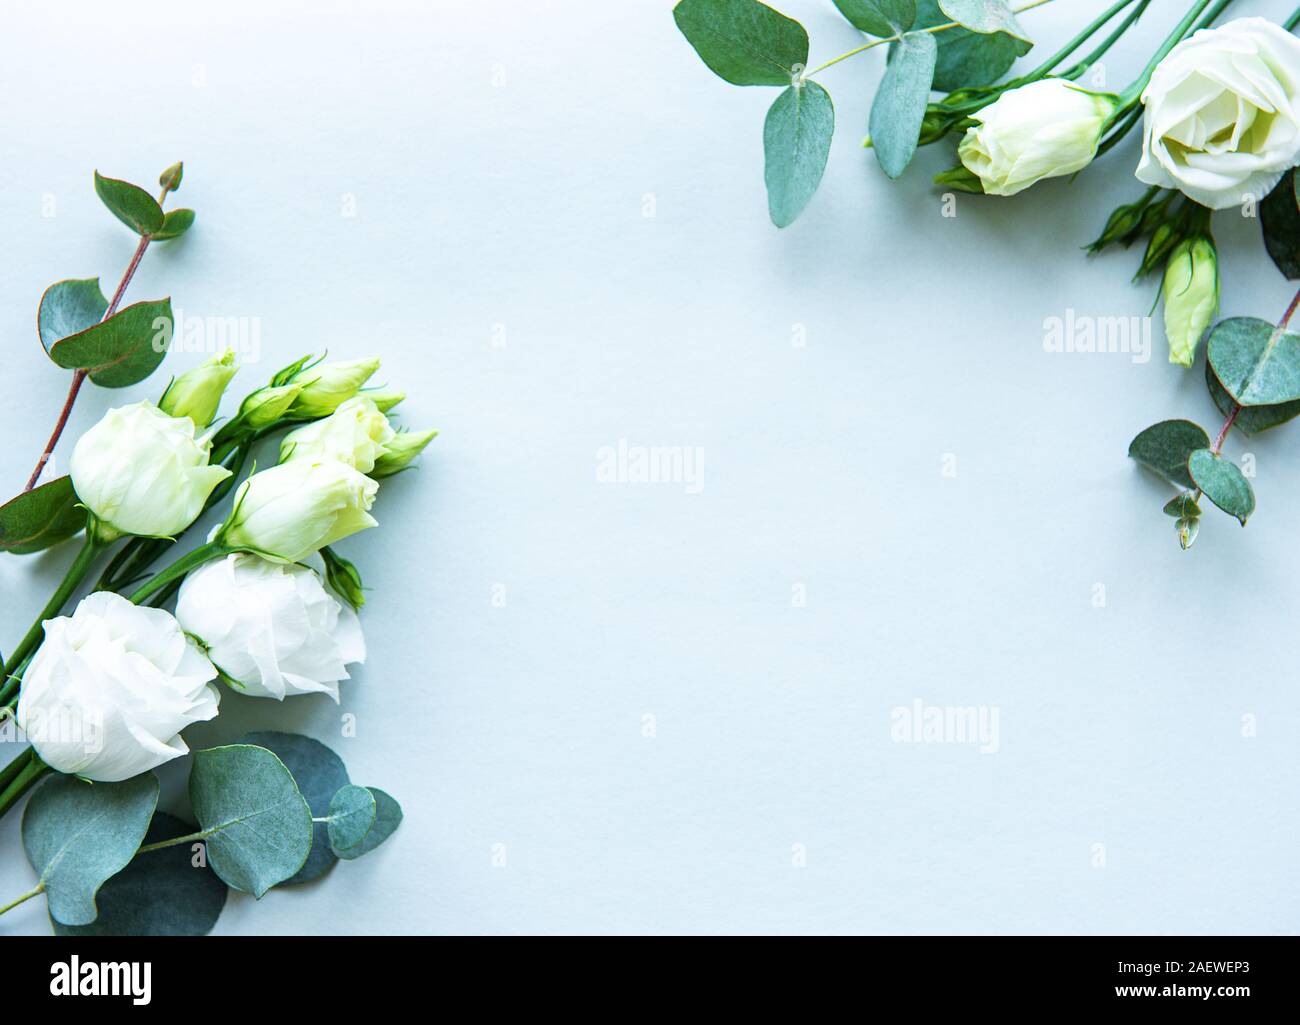 Bạn muốn tìm kiếm một bức hình đẹp cho đám cưới của mình? Hãy xem hình ảnh hoa thiên điểu trắng và cây bạch đàn trên nền xanh nhạt. Với vẻ đẹp tuyệt đẹp, bức hình này chắc chắn sẽ làm bạn hài lòng và tạo ra một không gian đầy lãng mạn.